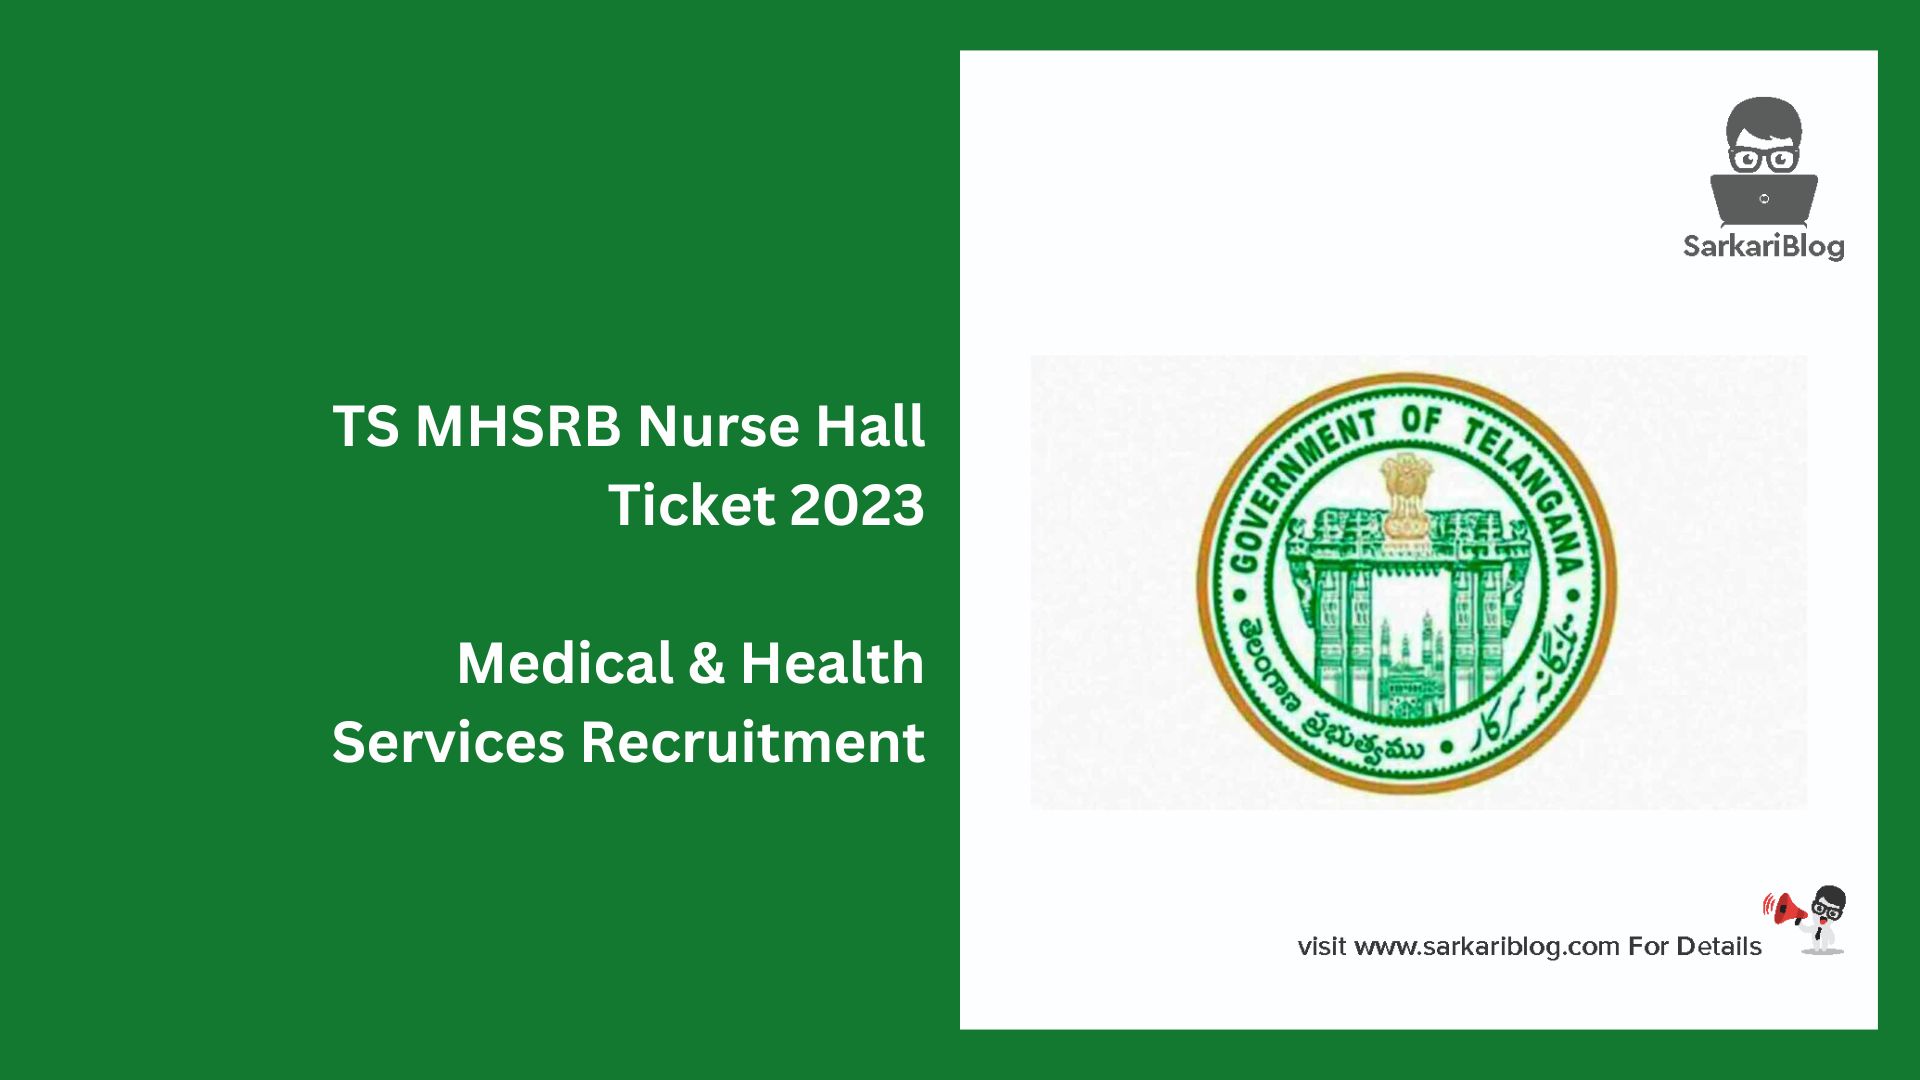 TS MHSRB Nurse Hall Ticket 2023